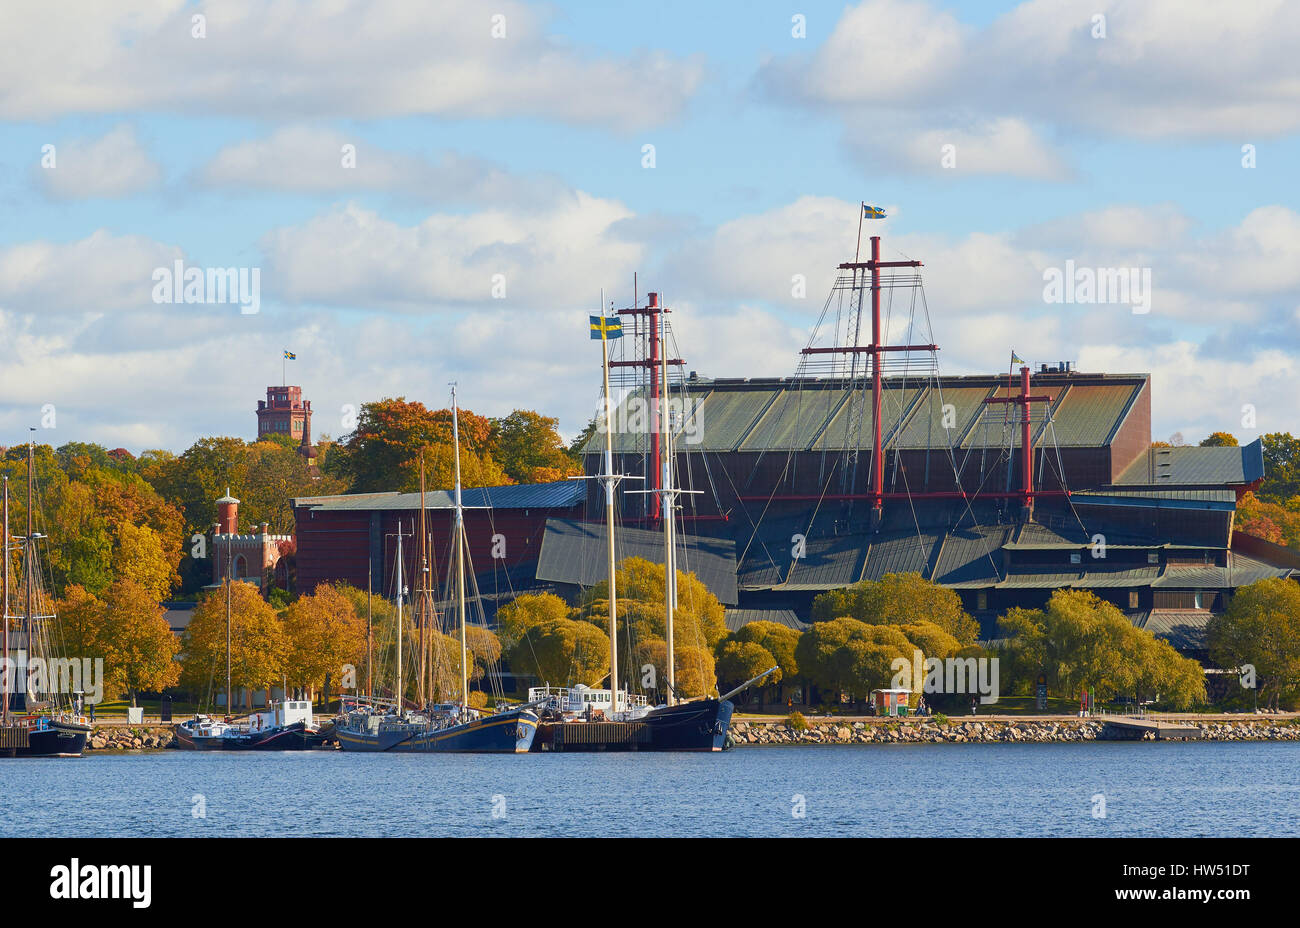 Musée Vasa (Vasamuseet) musée maritime, Djurgarden, Stockholm. Affiche du 17ème siècle restaurée qui a coulé le navire de guerre Vasa son voyage inaugural en 1628. Banque D'Images